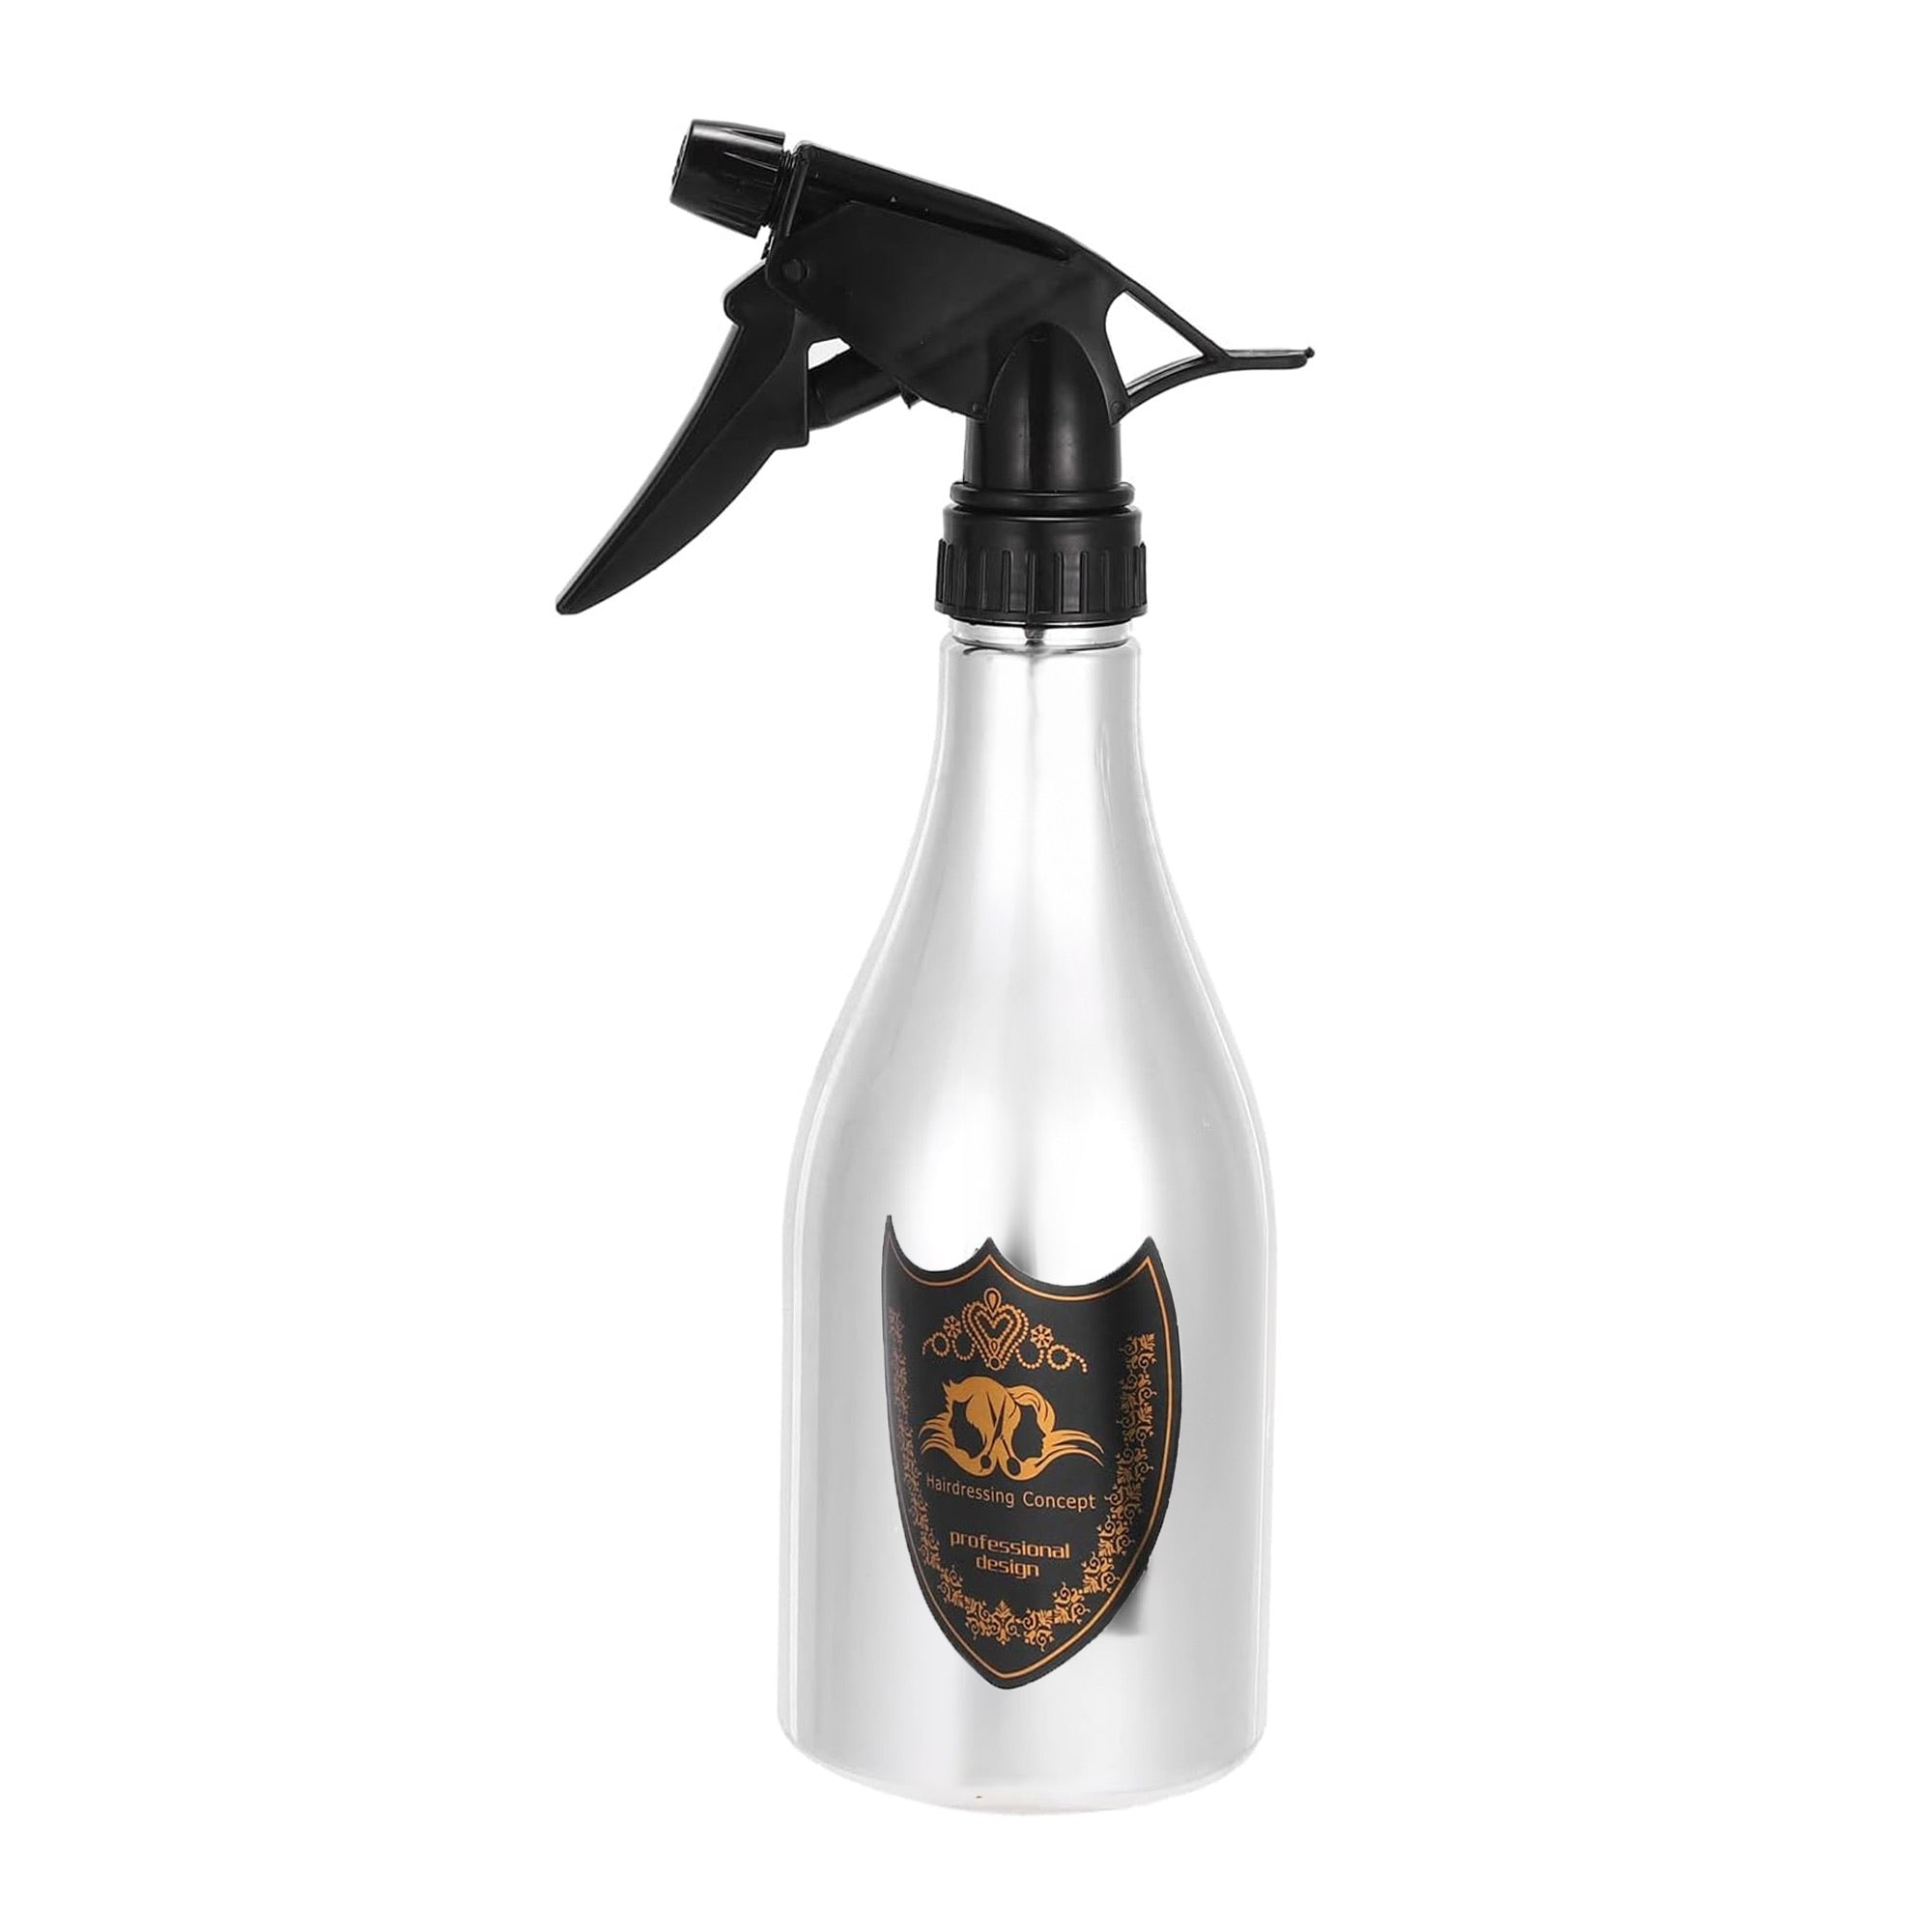 Eson - Water Spray Bottle 500ml Extreme Mist Sprayer Champagne Style (Silver)